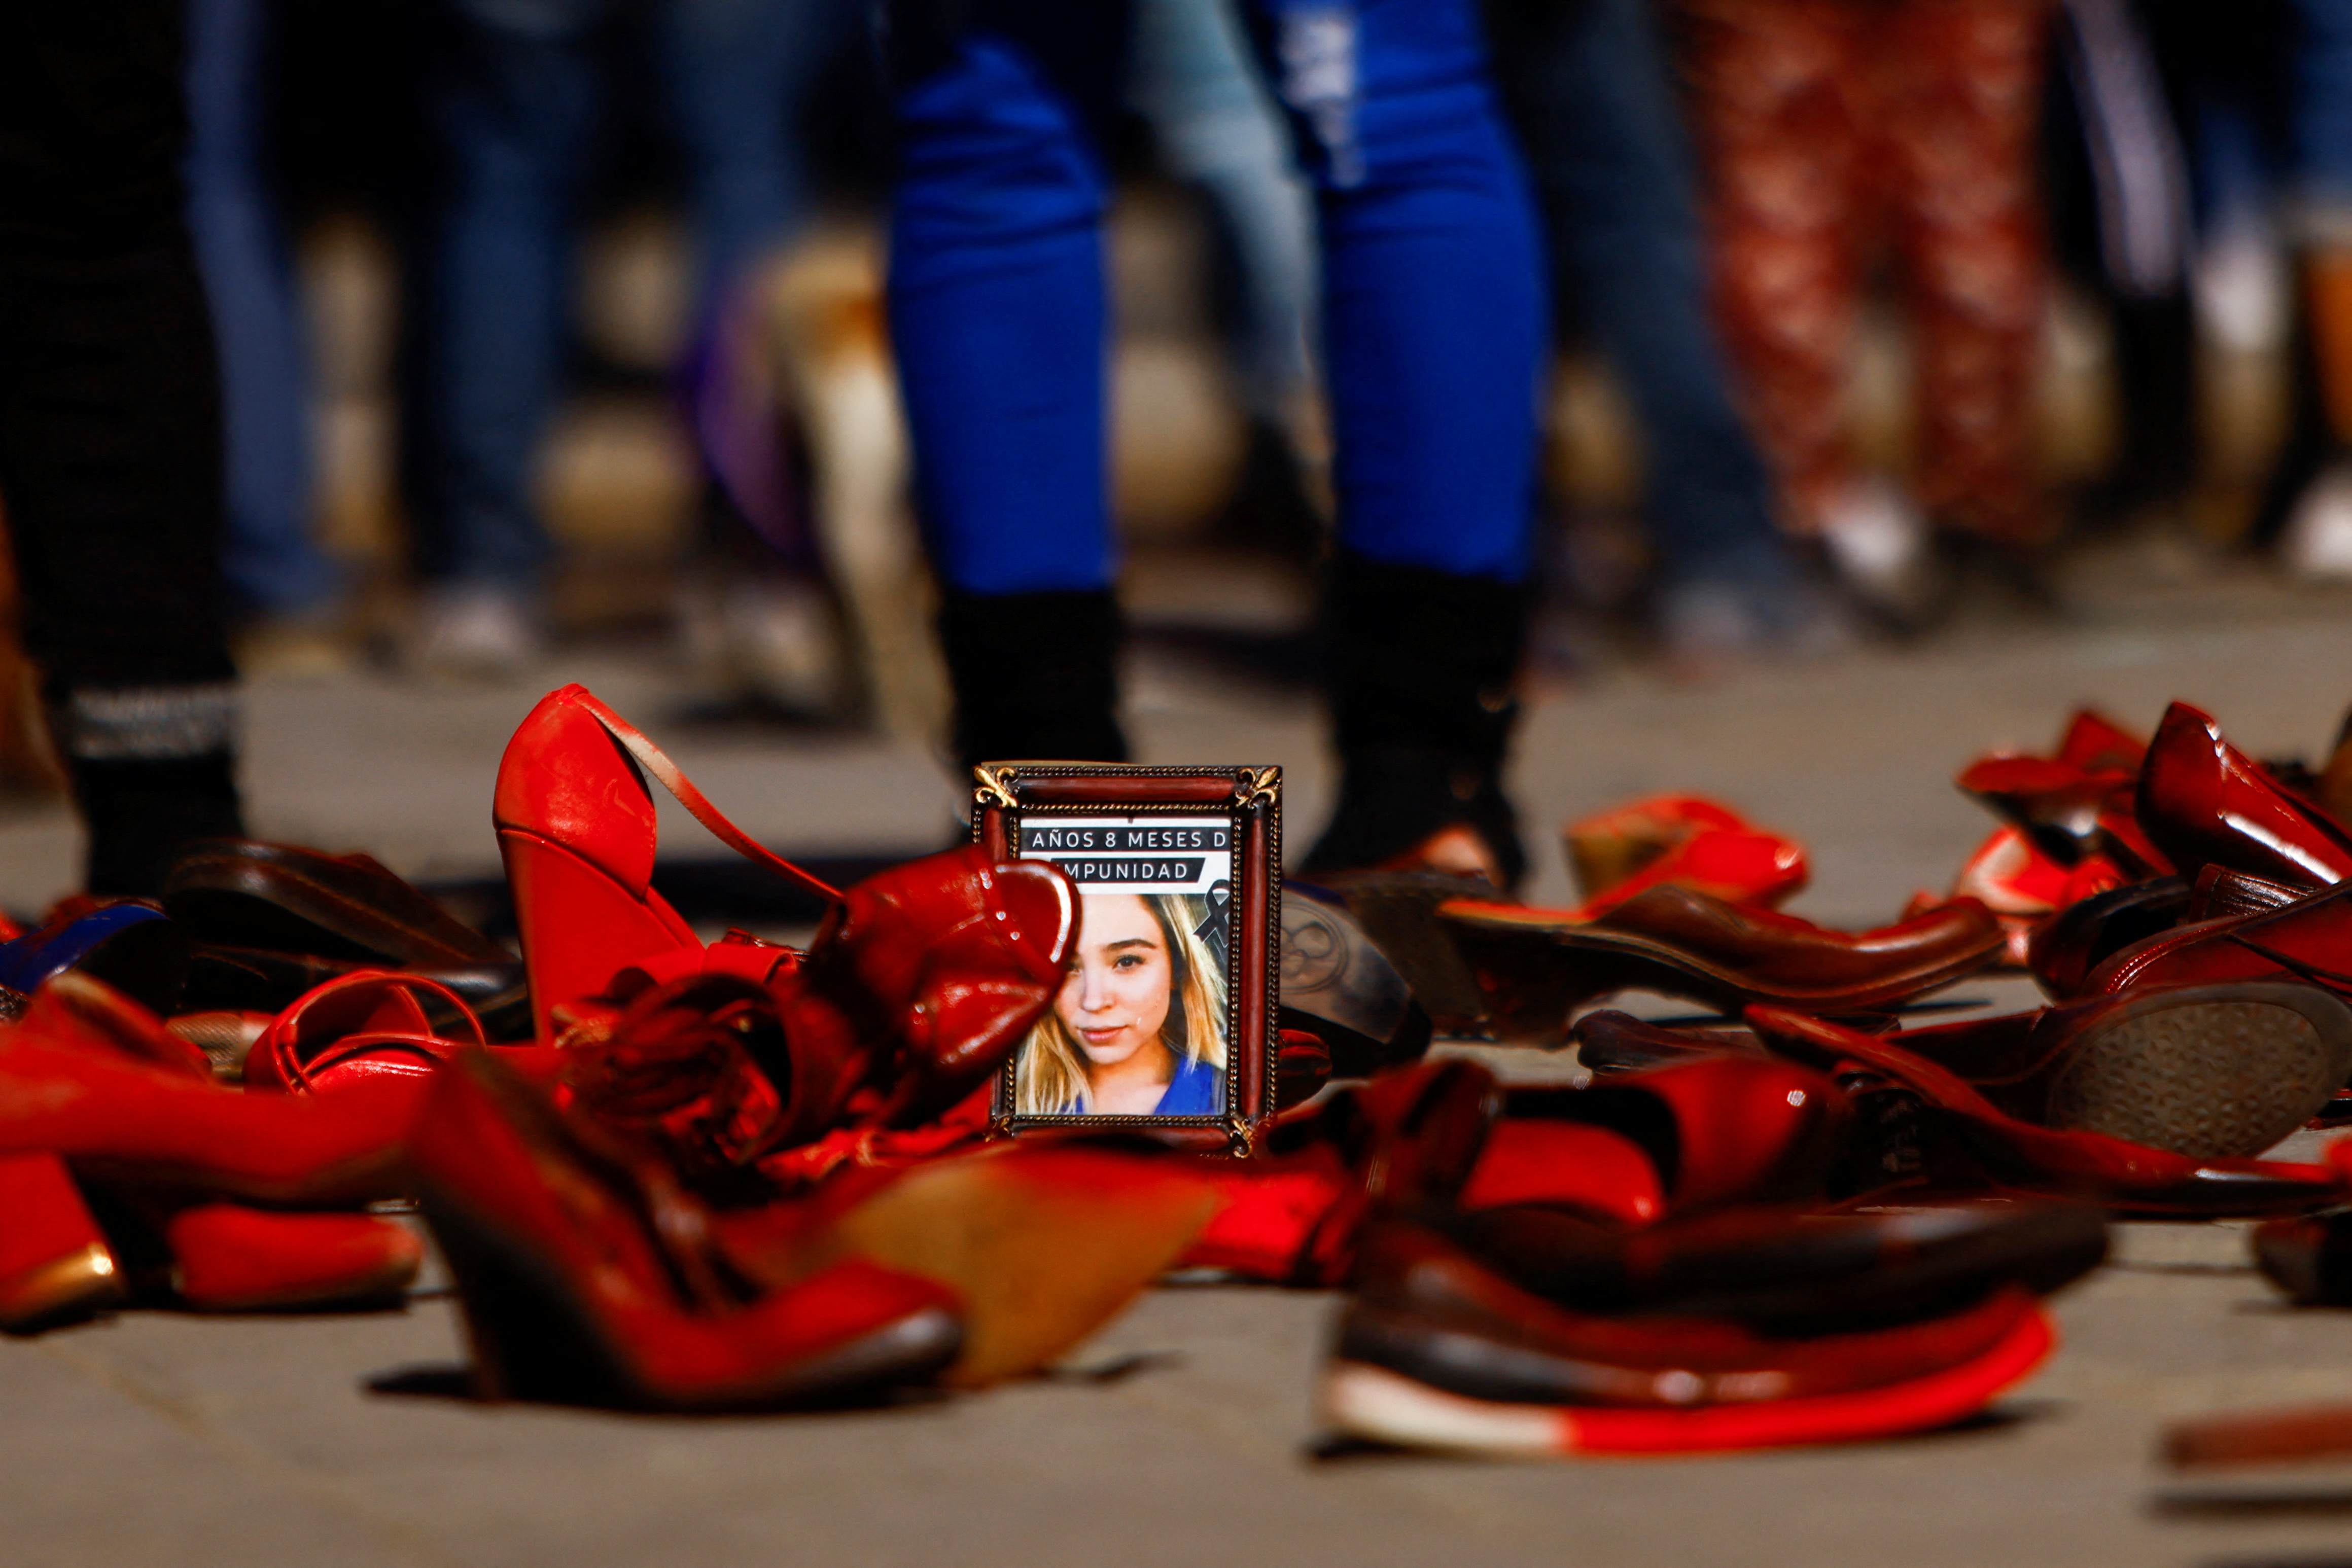 La fotografía de Silvia Kezaline Corona, quien fue asesinada en junio de 2019, se ve entre los zapatos rojos de mujer que fueron colocados en protesta (Foto: Reuters)